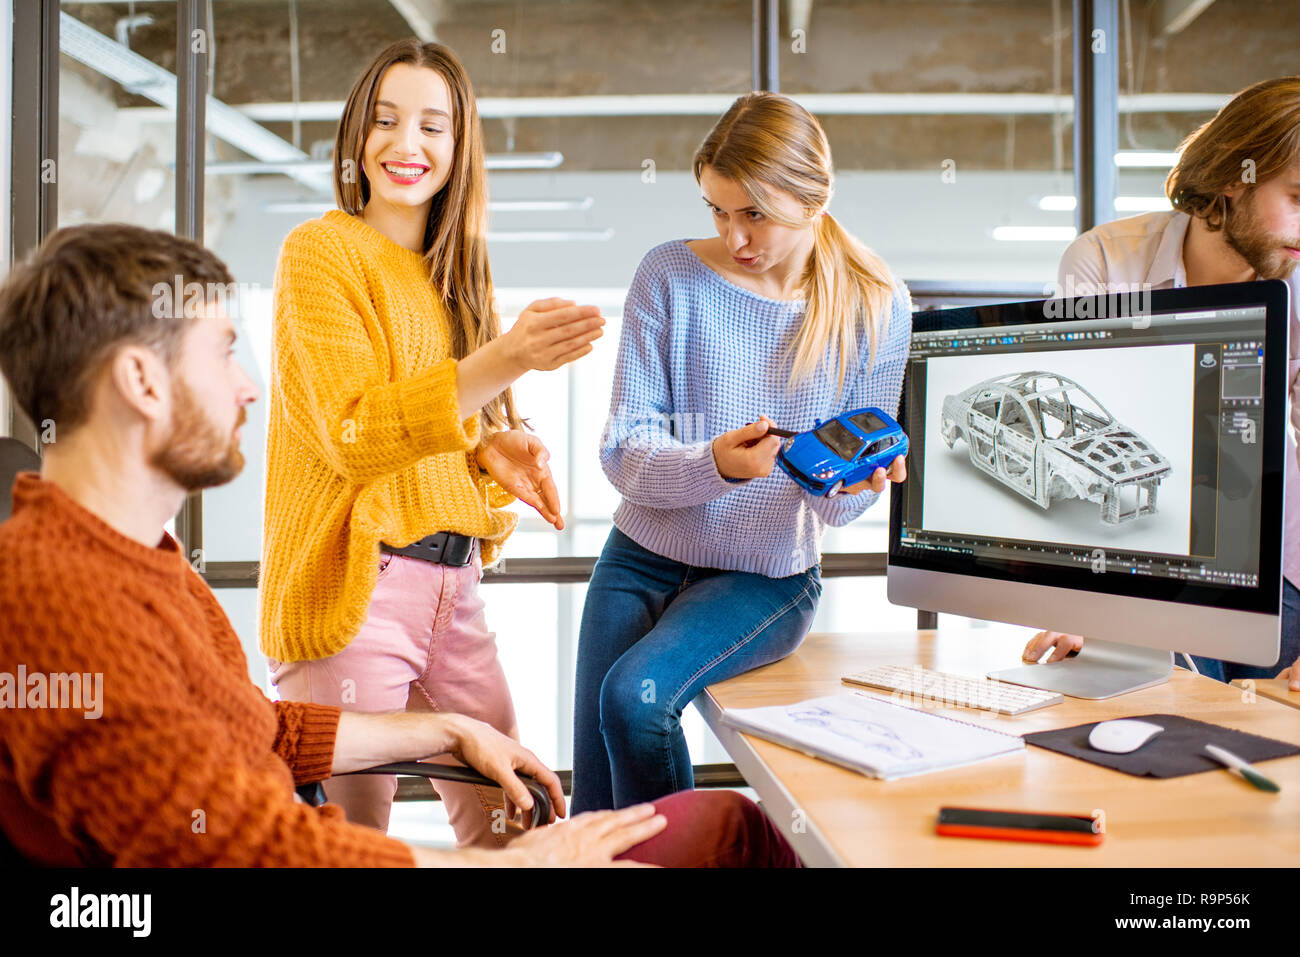 Gruppe von jungen, kreativen Mitarbeitern Entwerfen eines Pkw-Modell am Arbeitsplatz mit Computern im modernen Büro innen Stockfoto